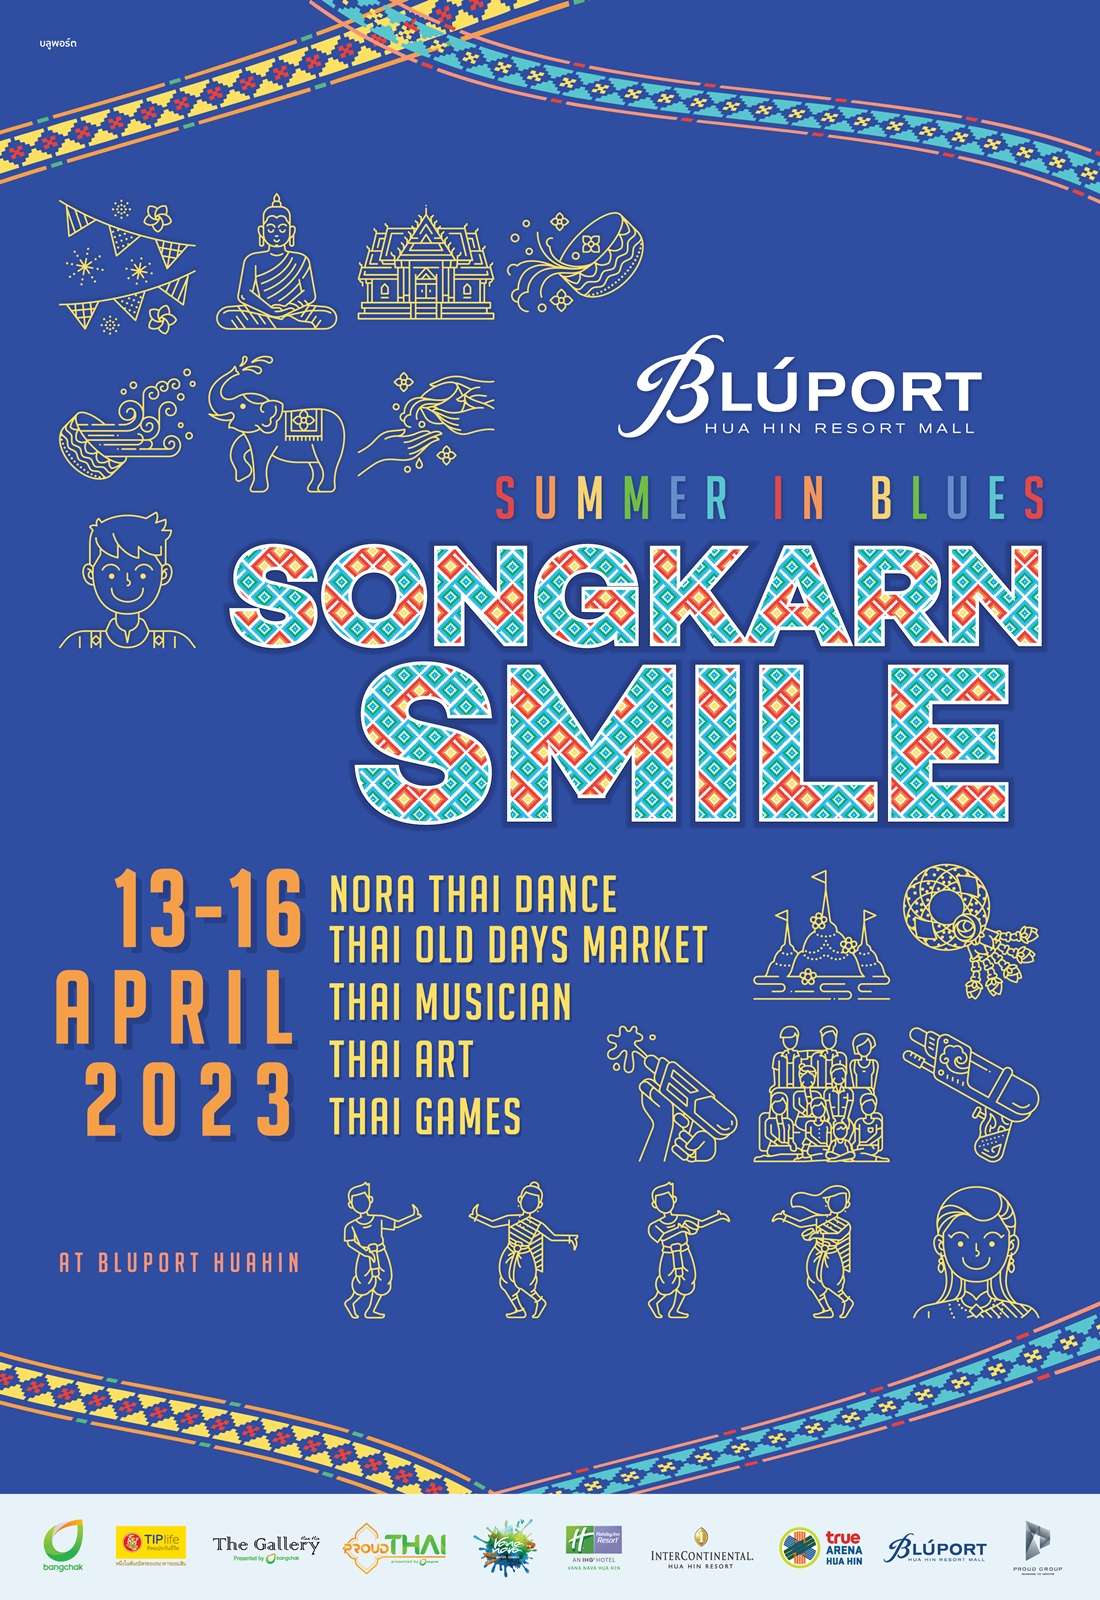 ชวนมา ชม ชิม ช้อป ฉลองปีใหม่ไทย กับแคมเปญ Summer In Blues .. Songkran Smile ด้านหน้าบลูพอร์ต หัวหิน